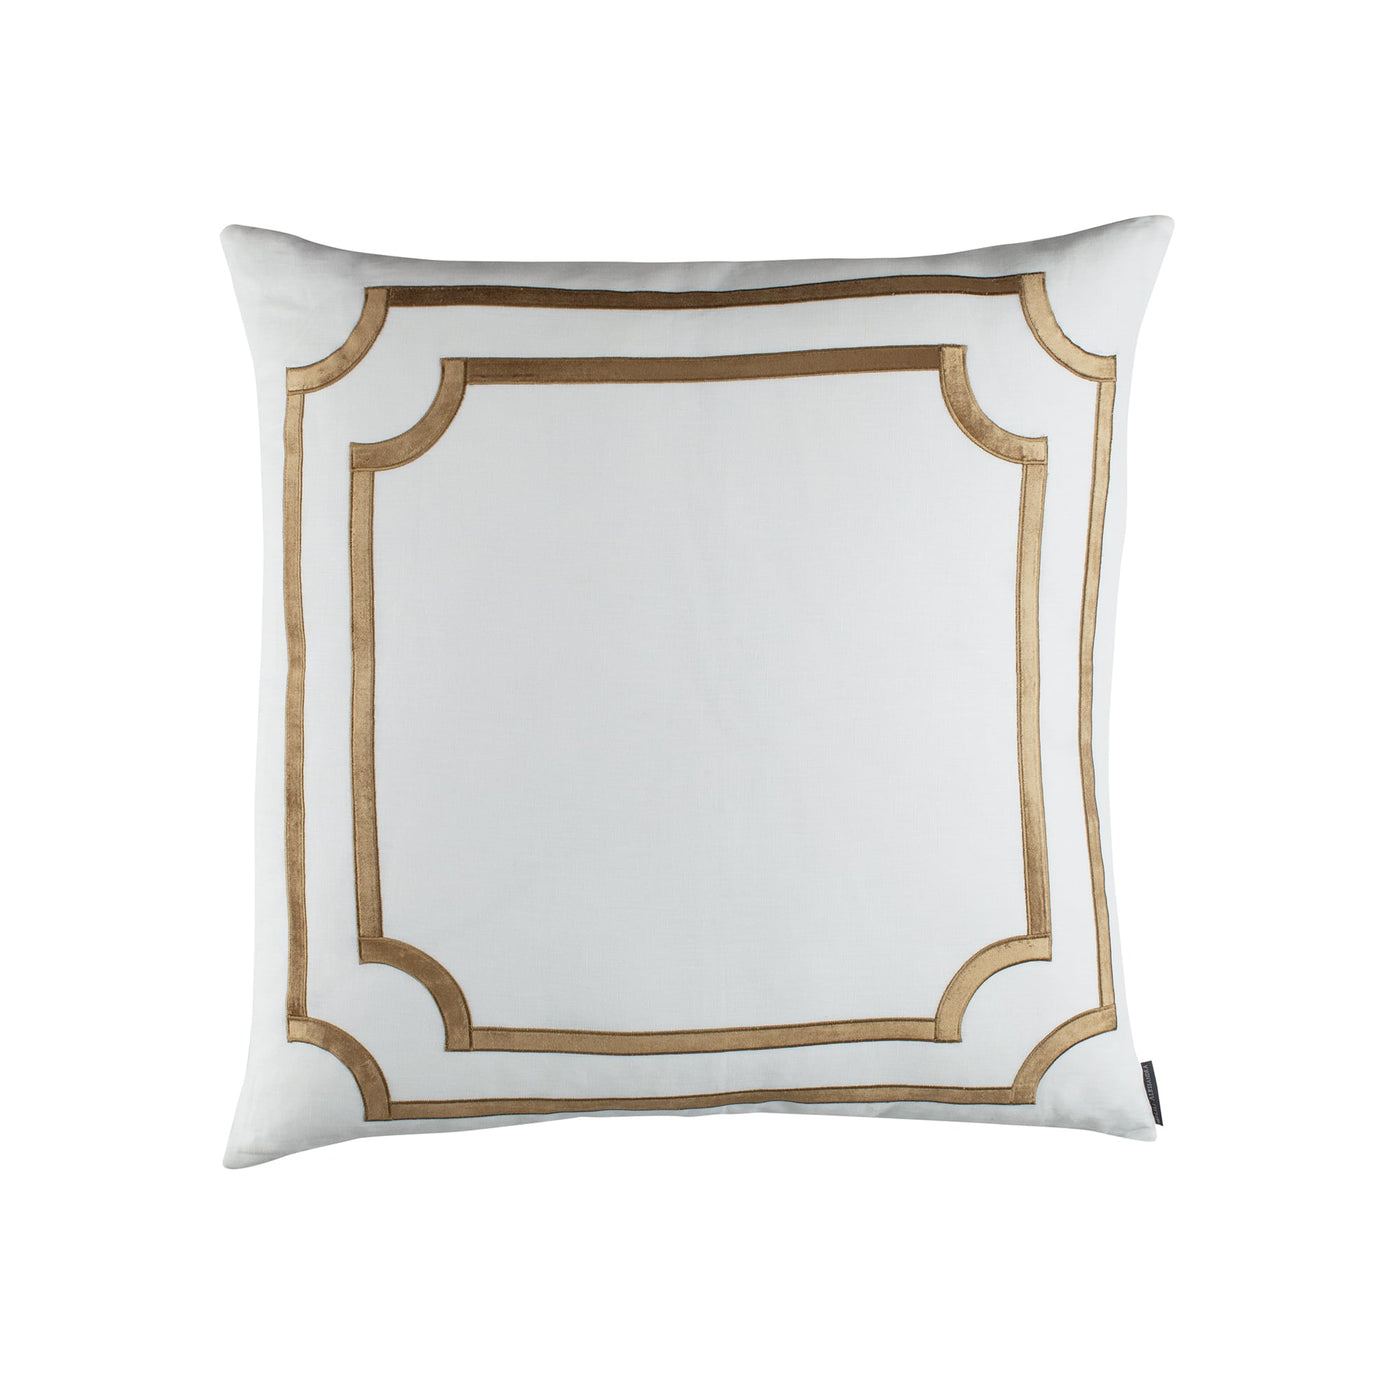 Soho European Pillow / White Linen / Straw Velvet 26X26